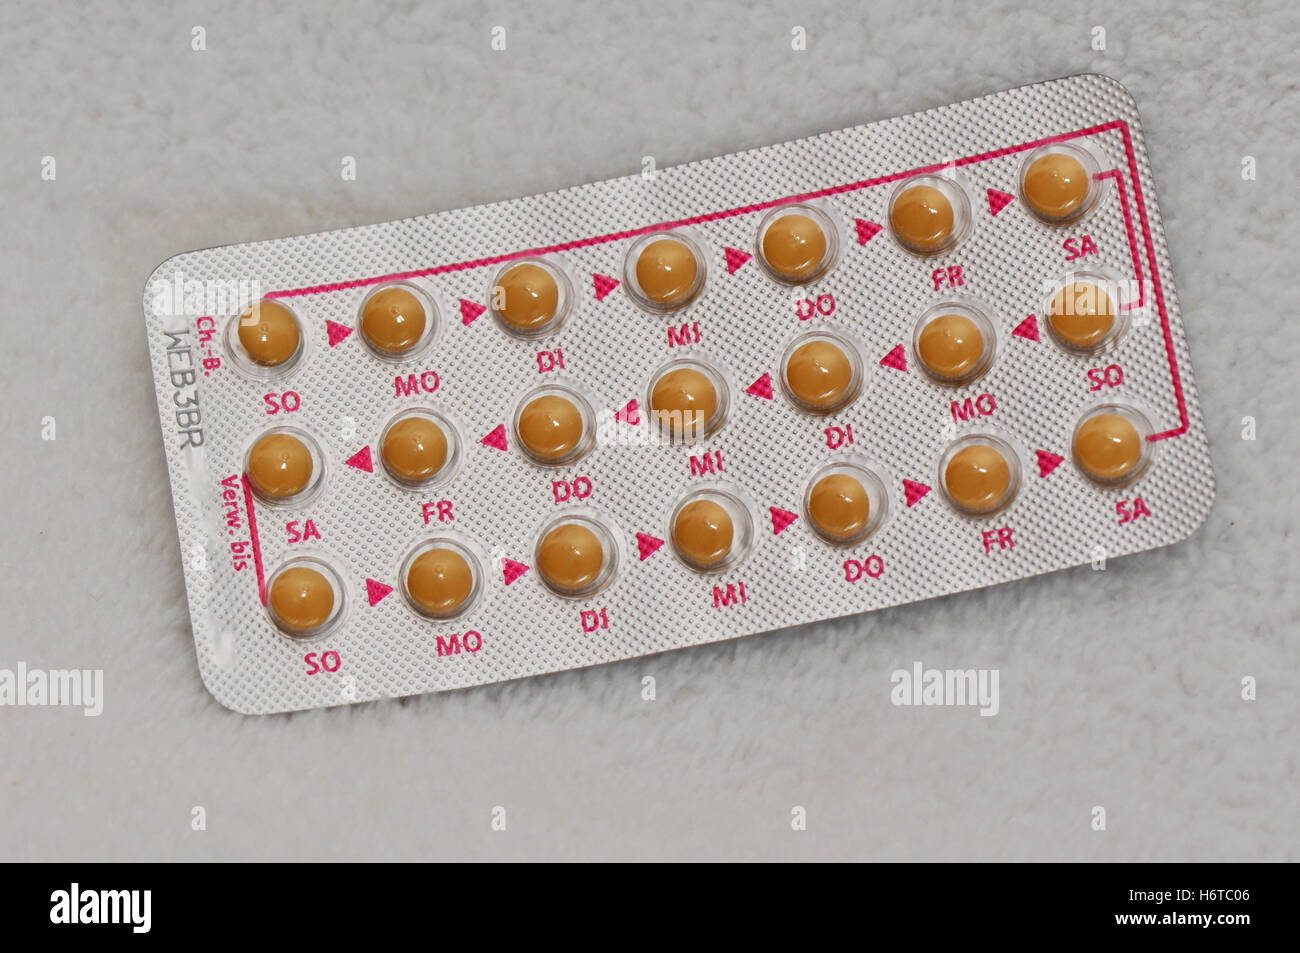 birth control pill Stock Photo